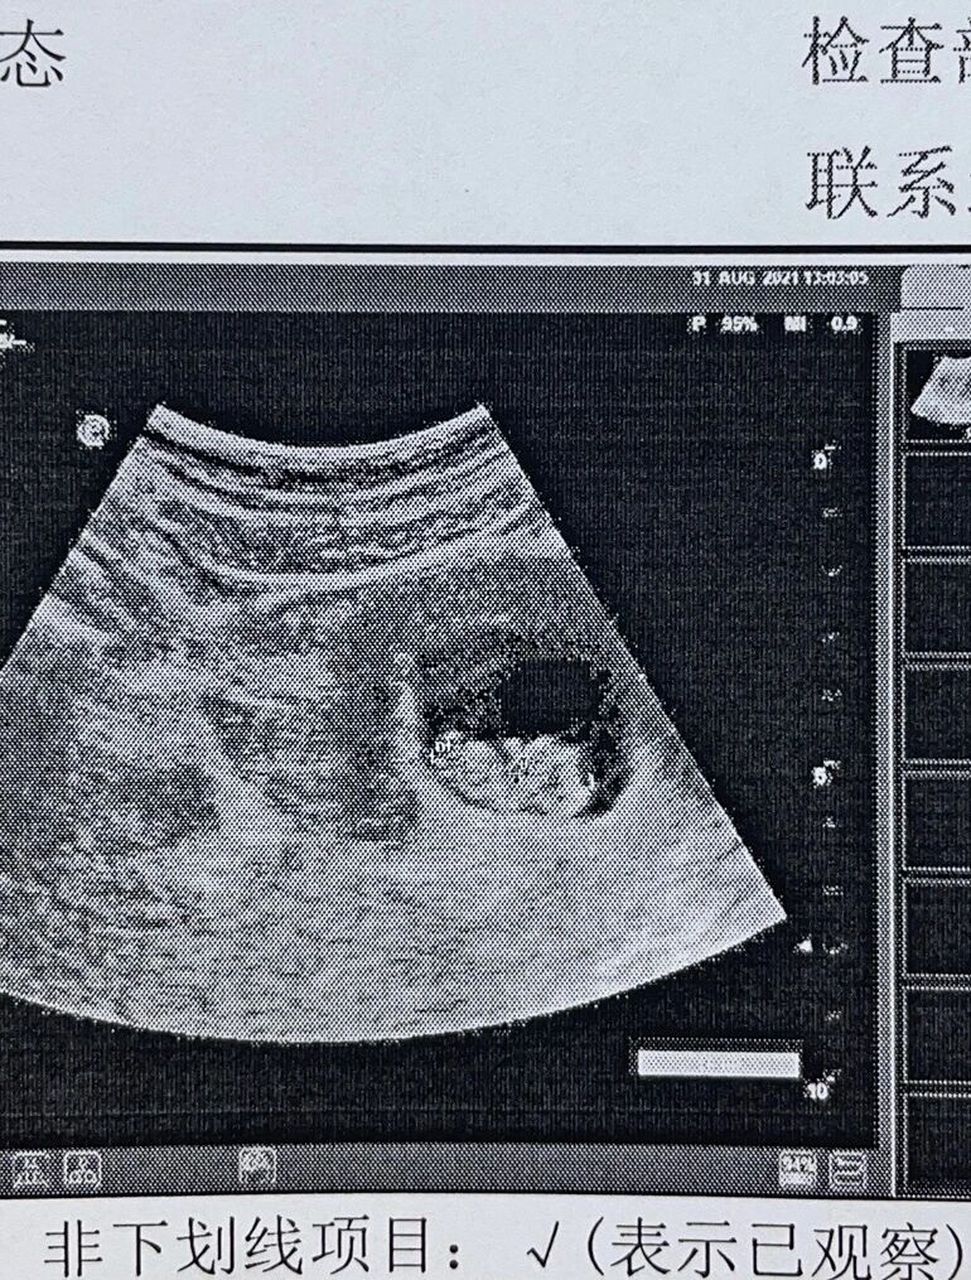 胎儿偏小图片